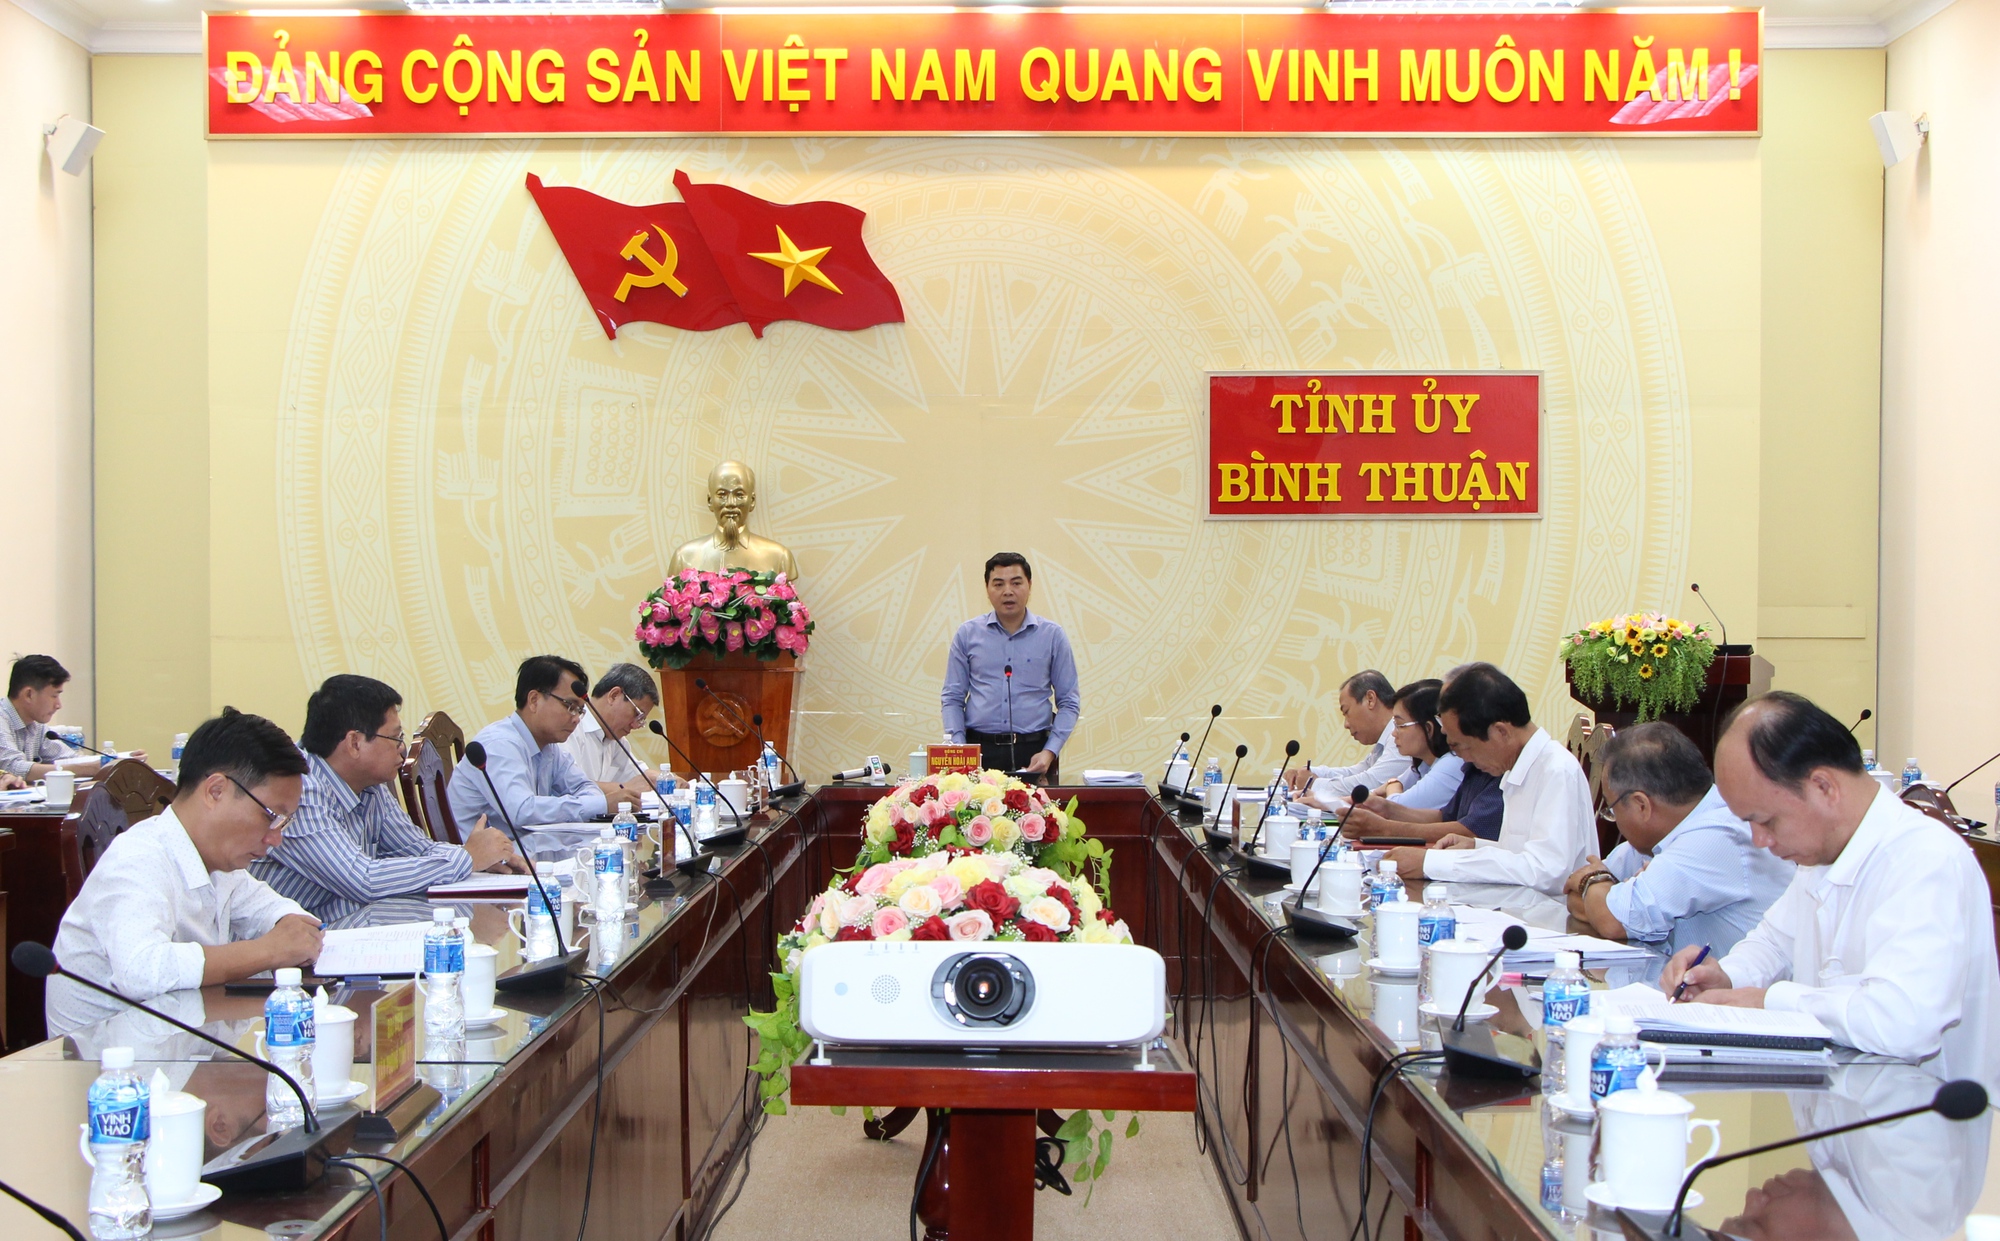 Bình Thuận: Hội Nông dân huyện Phú Quý được chọn làm đại hội điểm cấp huyện - Ảnh 1.